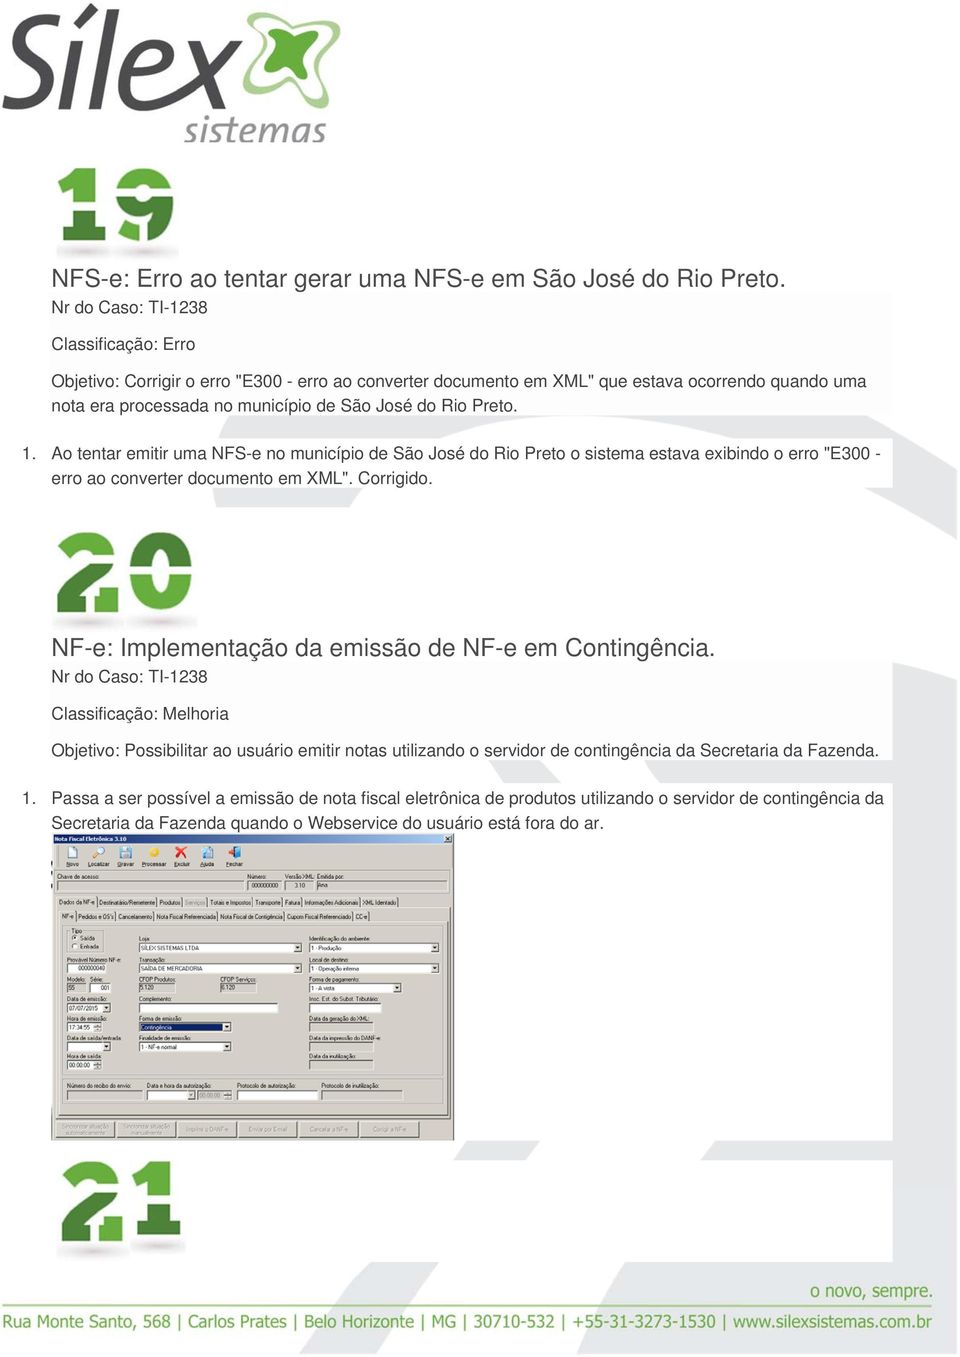 Ao tentar emitir uma NFS-e no município de São José do Rio Preto o sistema estava exibindo o erro "E300 - erro ao converter documento em XML". Corrigido.